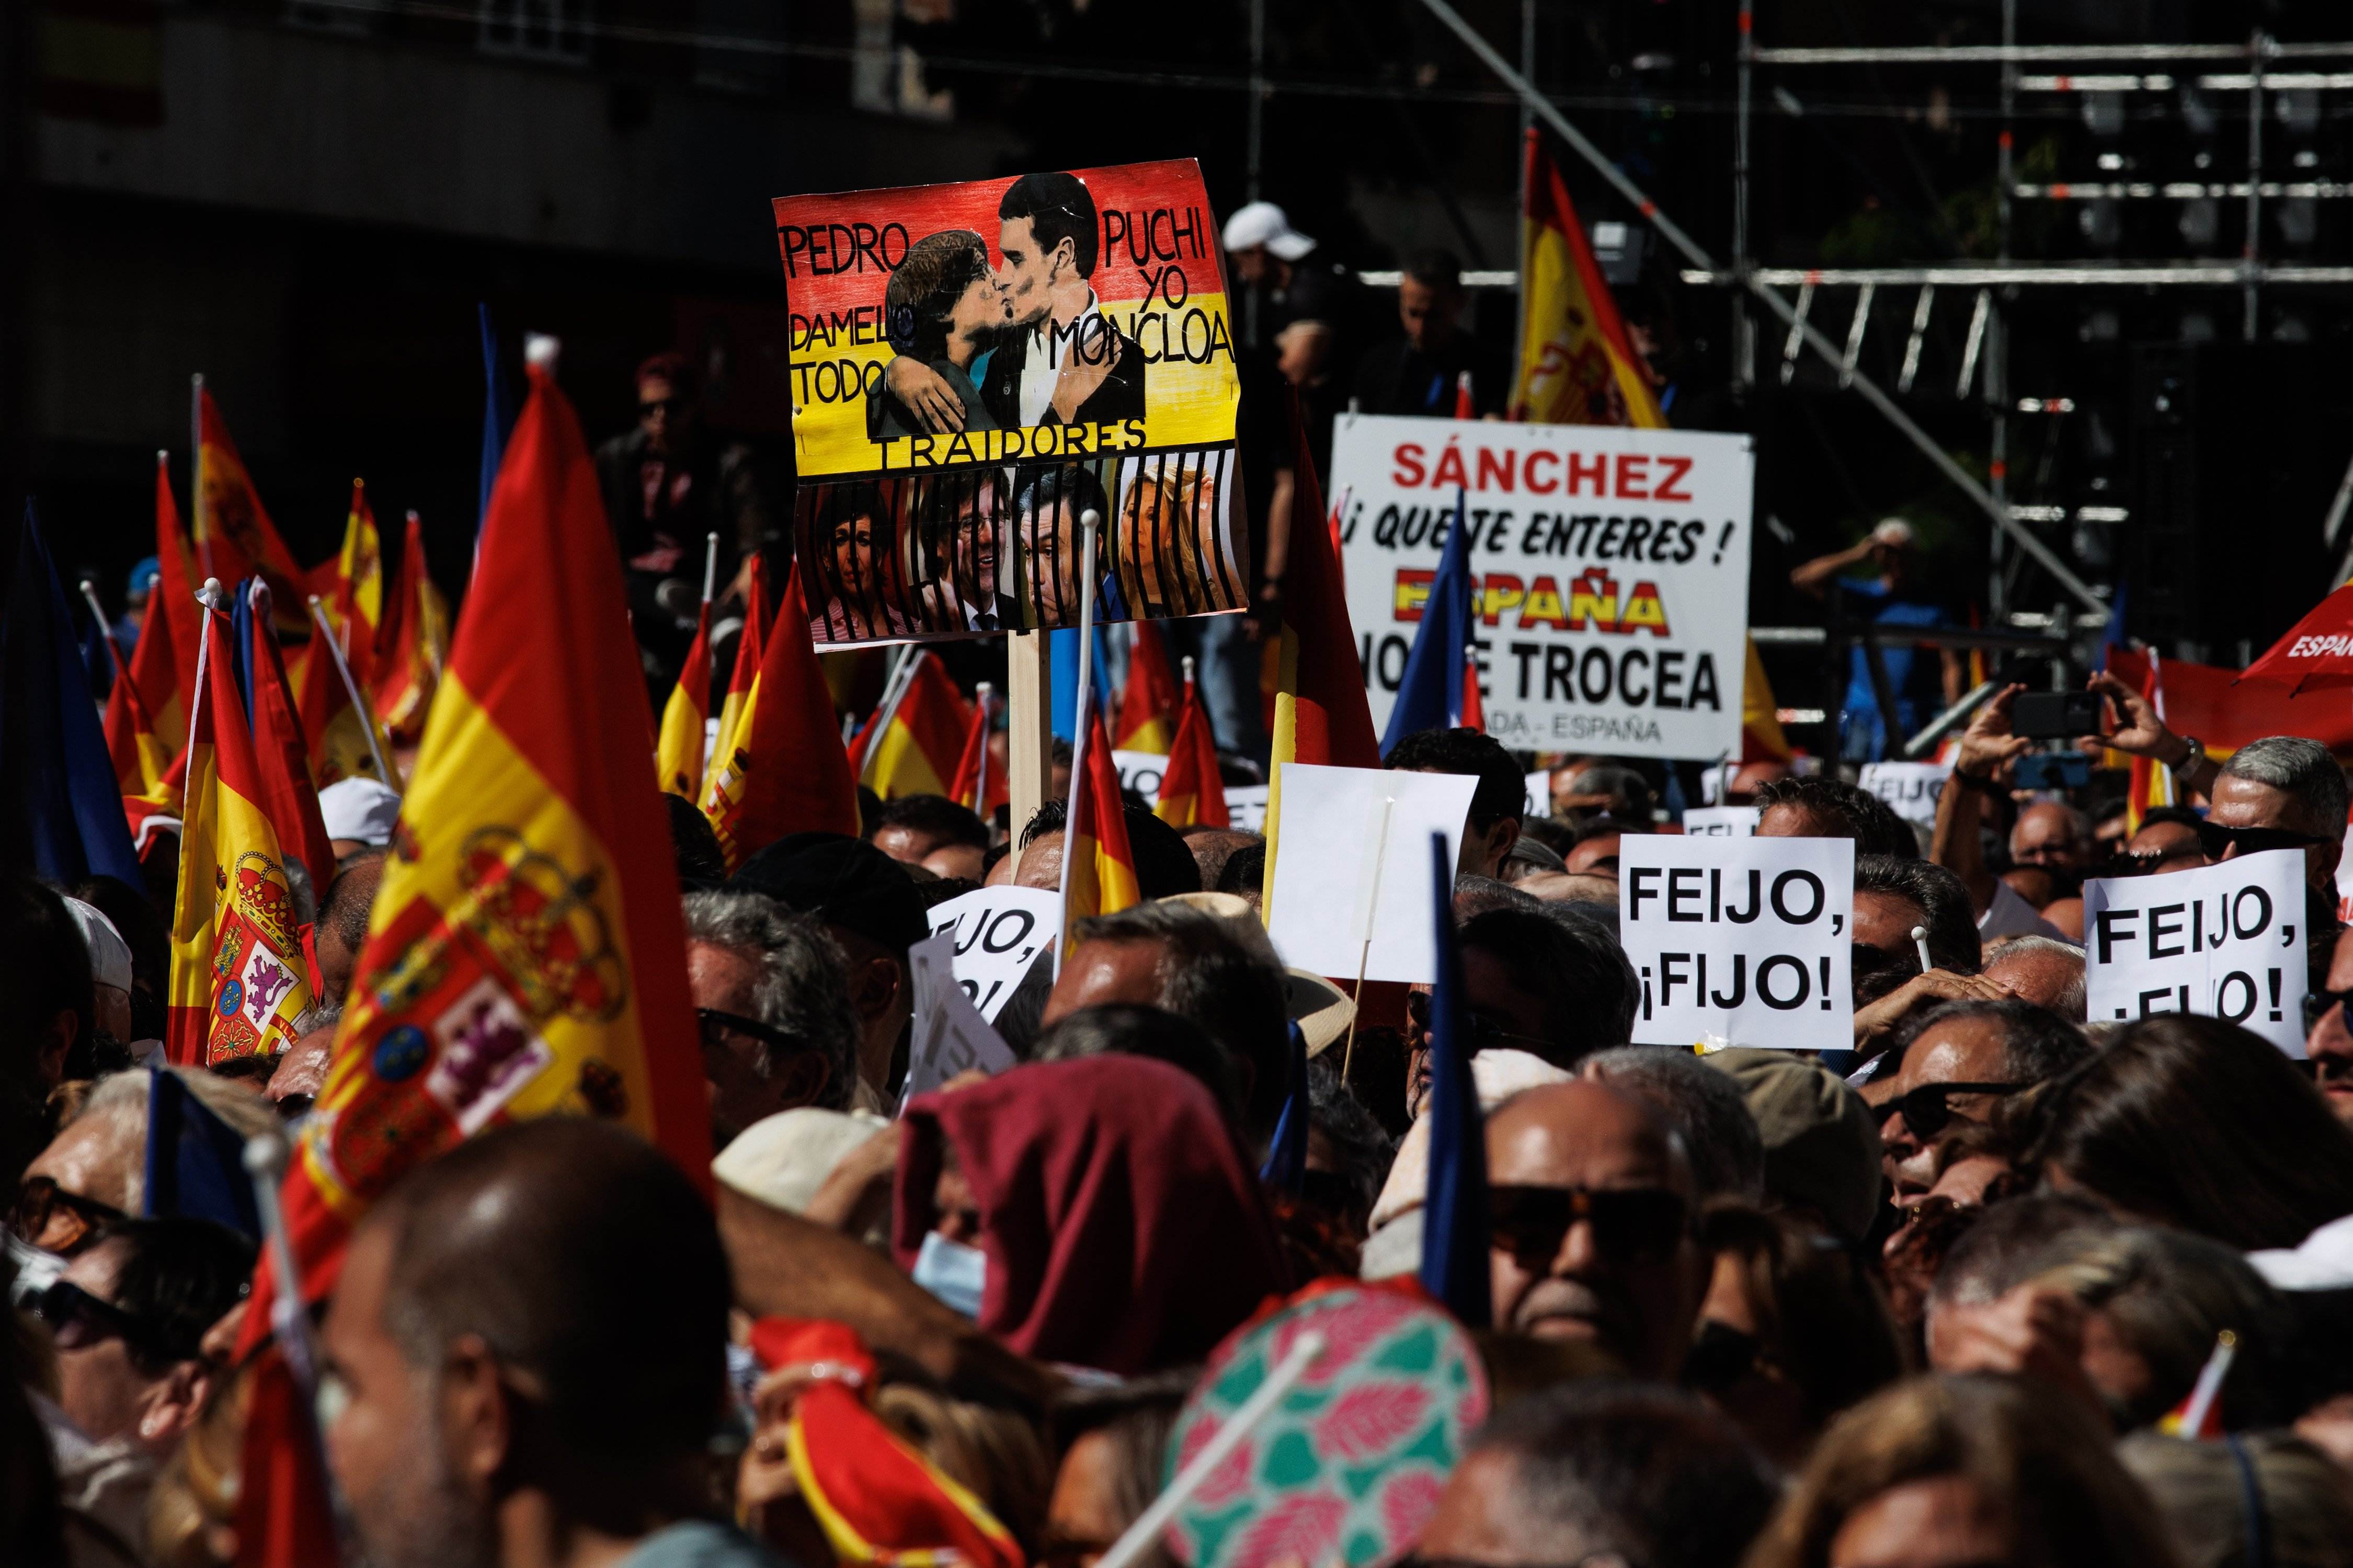 L'acte contra l’amnistia, a peu de carrer: “Puigdemont ha de podrir-se a la presó”